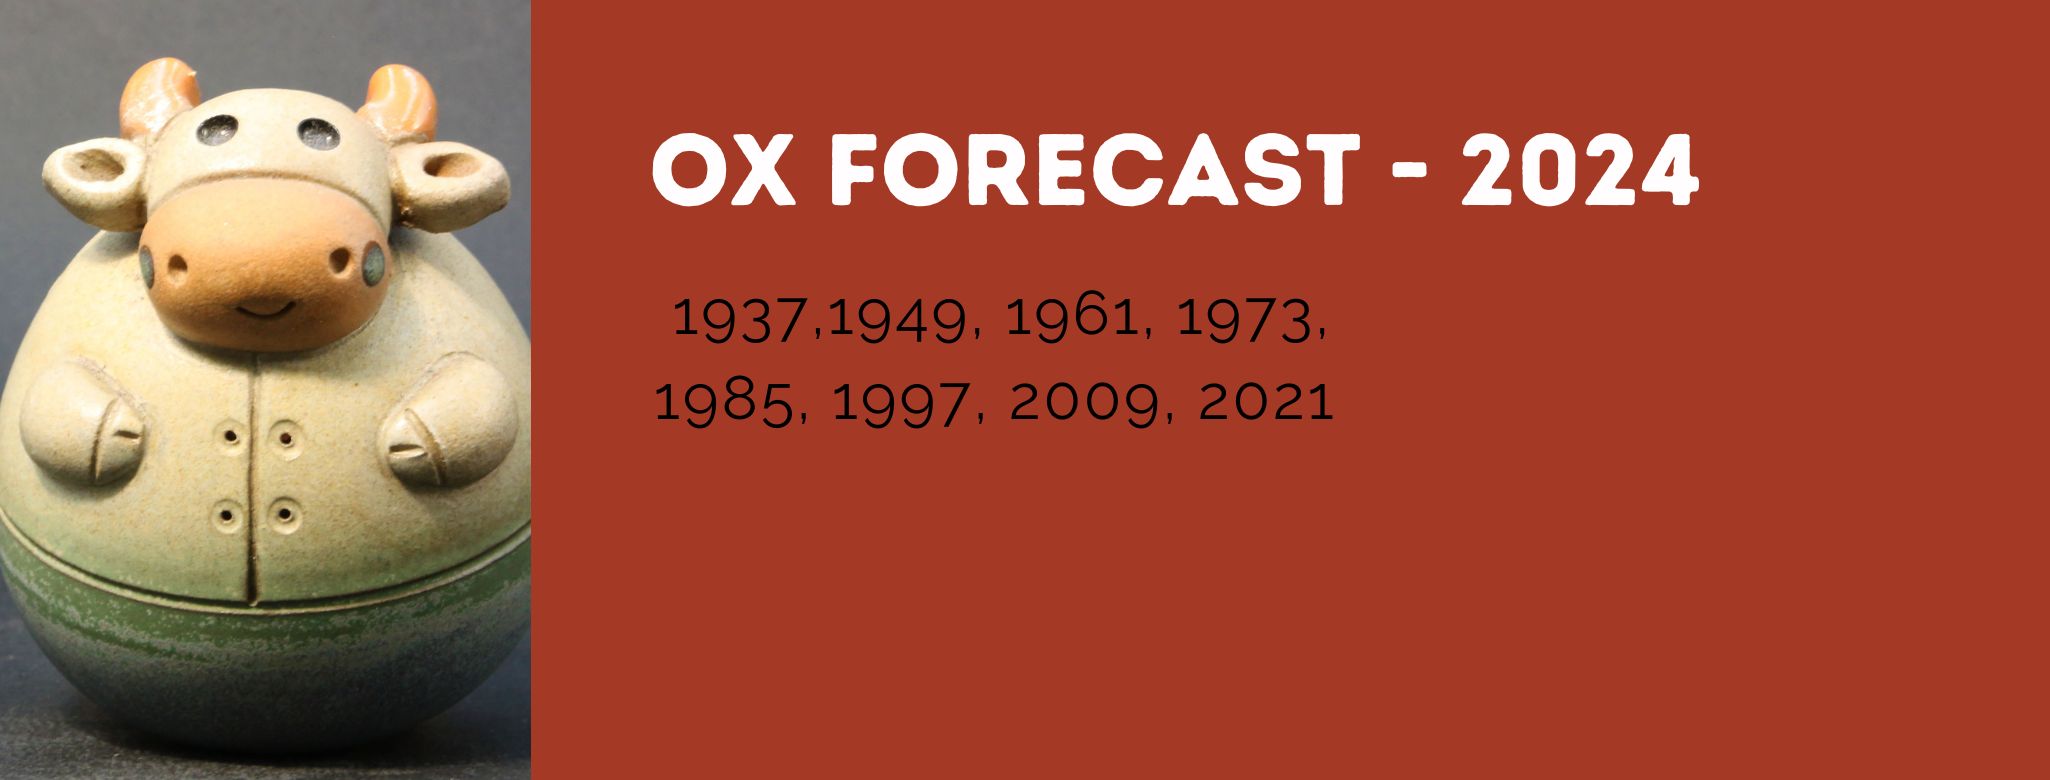 OX Zodiac Forecast - 2024